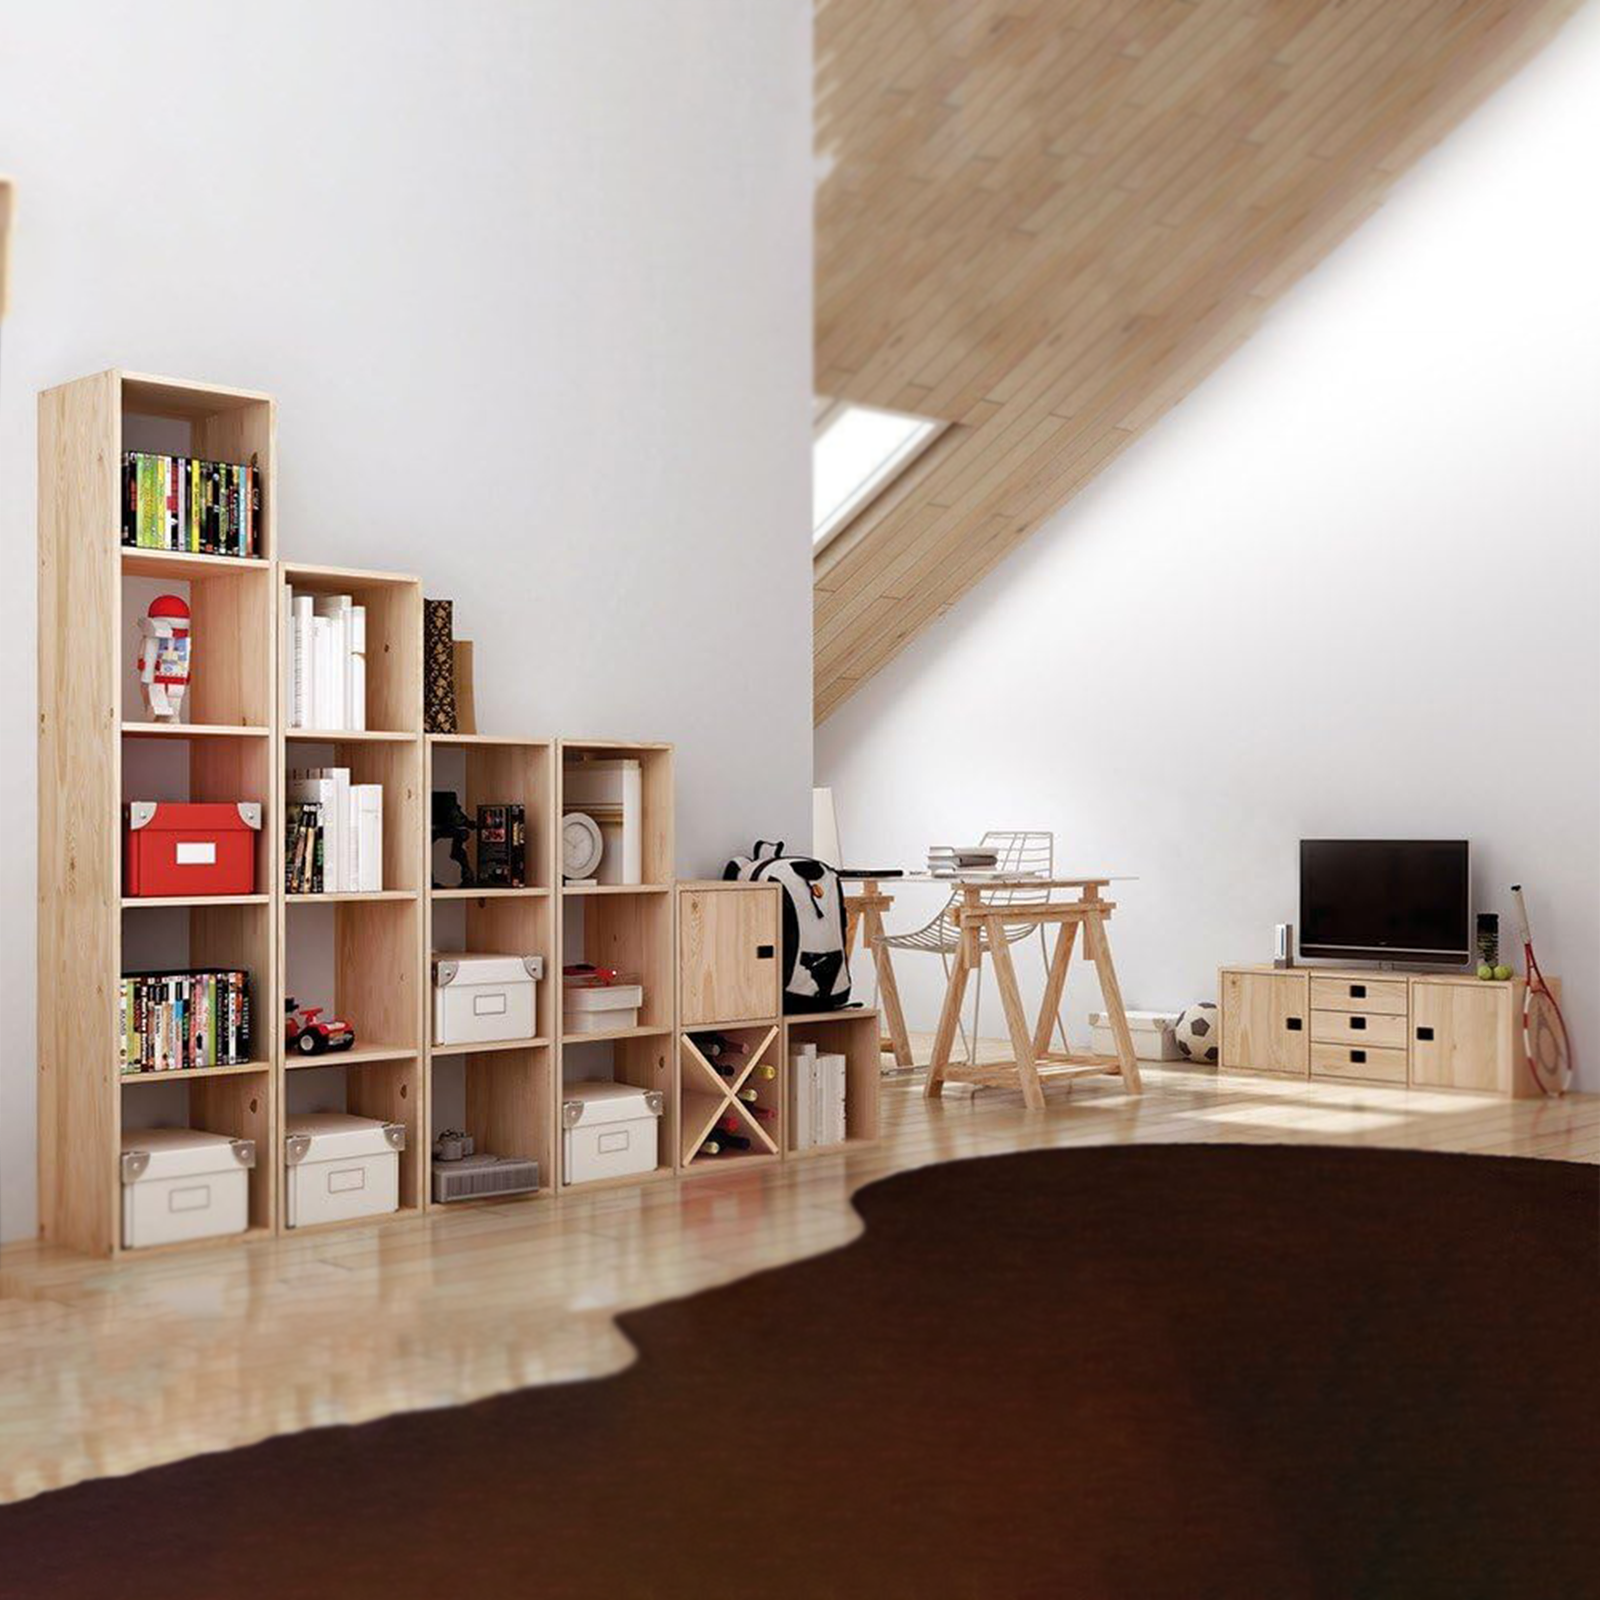 Libreria componibile in legno "Cubo" scaffale modulare da muro con vani a giorno